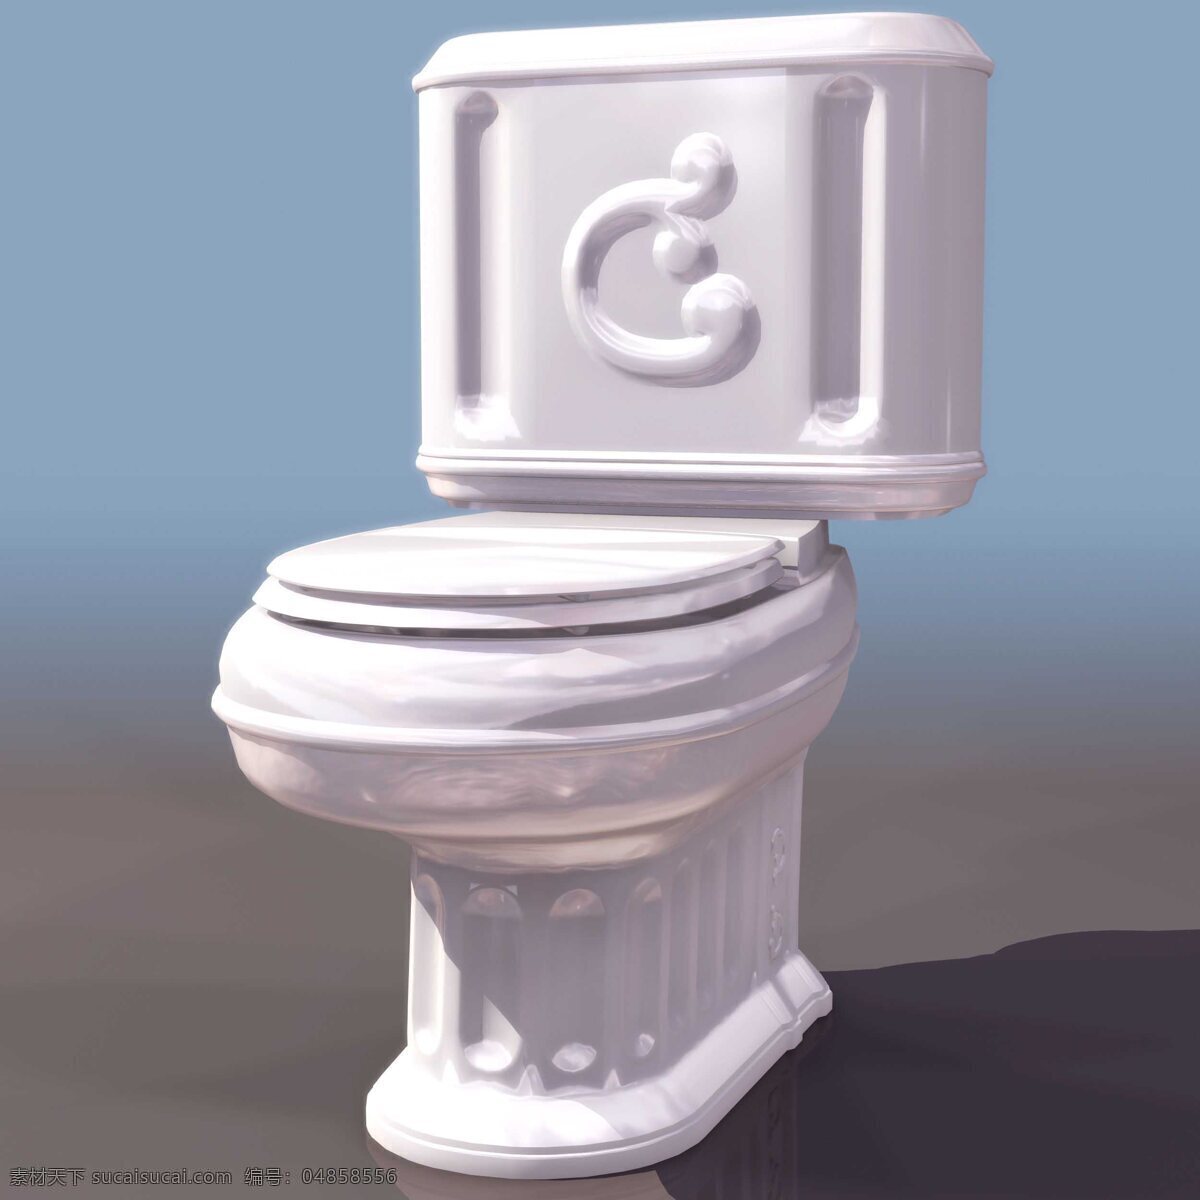 欧式坐便器 toilet 家居室内 坐便器 卫浴模型 3d模型素材 家具模型